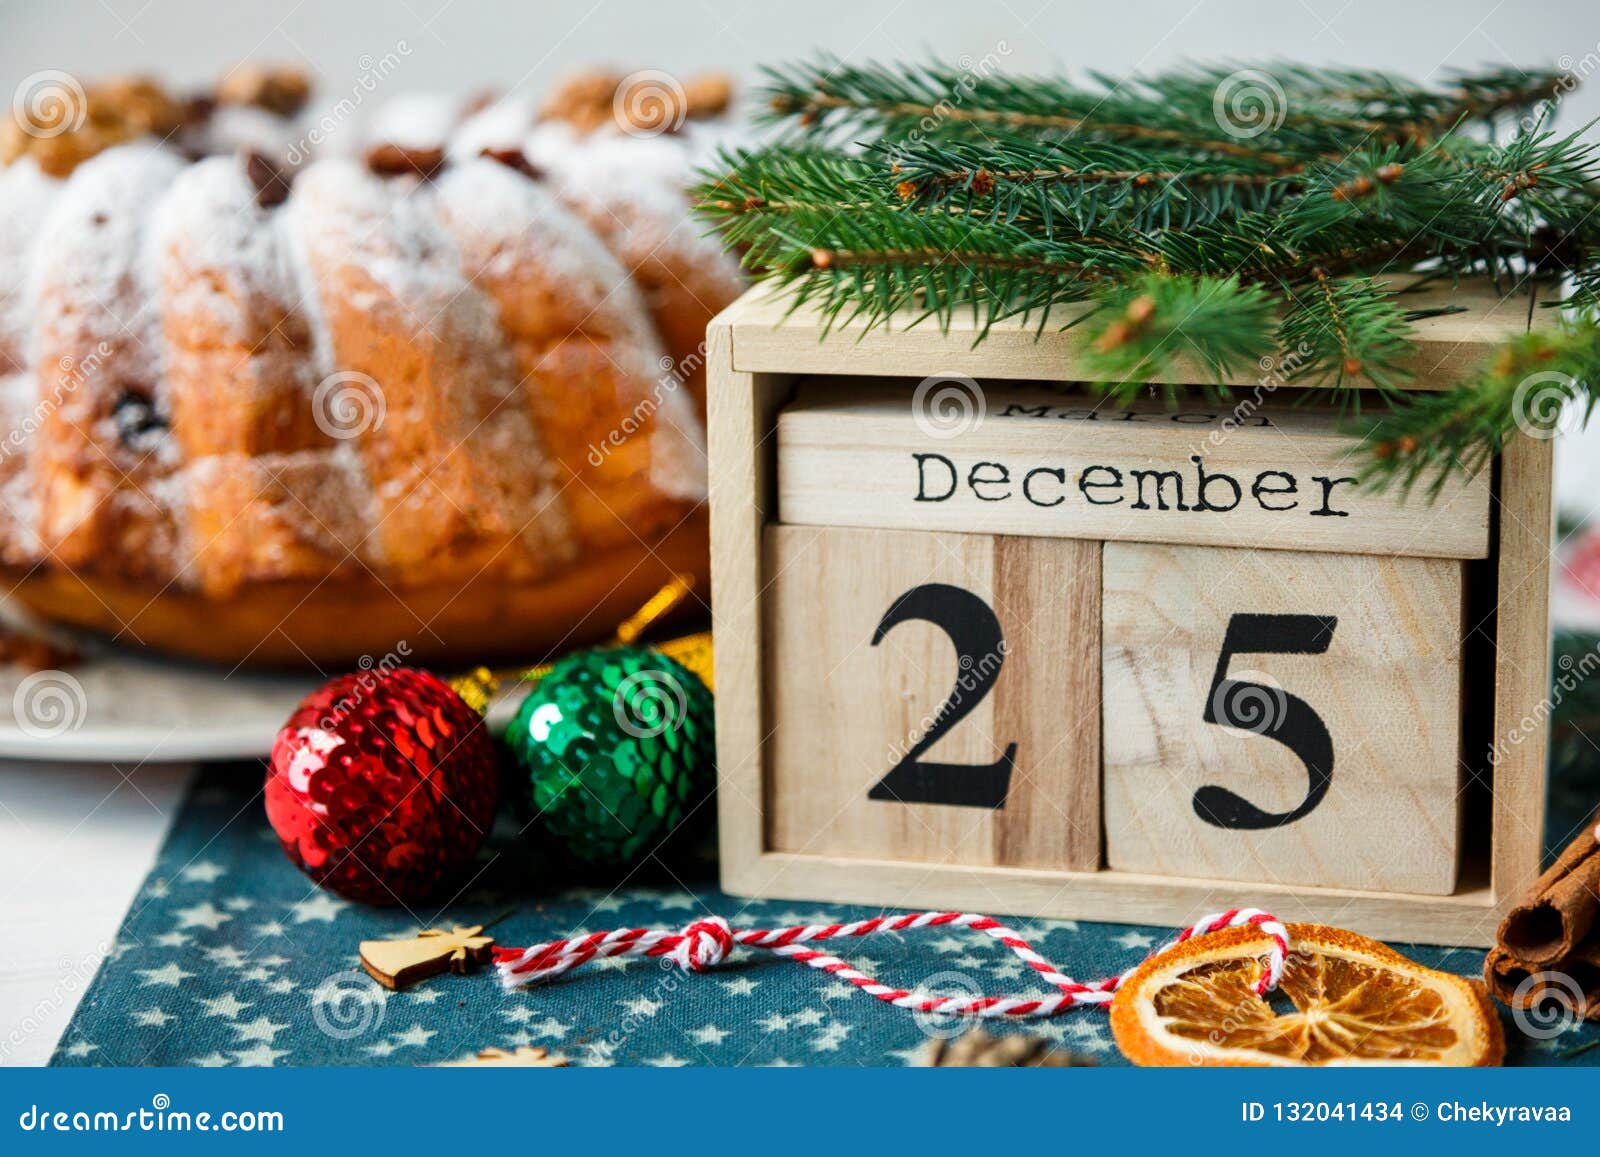 Traditioneller Fruchtkuchen für Weihnachten verziert mit Puderzucker und Nüssen, Rosinen nahe bei hölzernem Kalender mit Datum am 25. Dezember selbst gemachtem Gebäck Delicioius Neues Jahr und Weihnachtsfeierkonzept